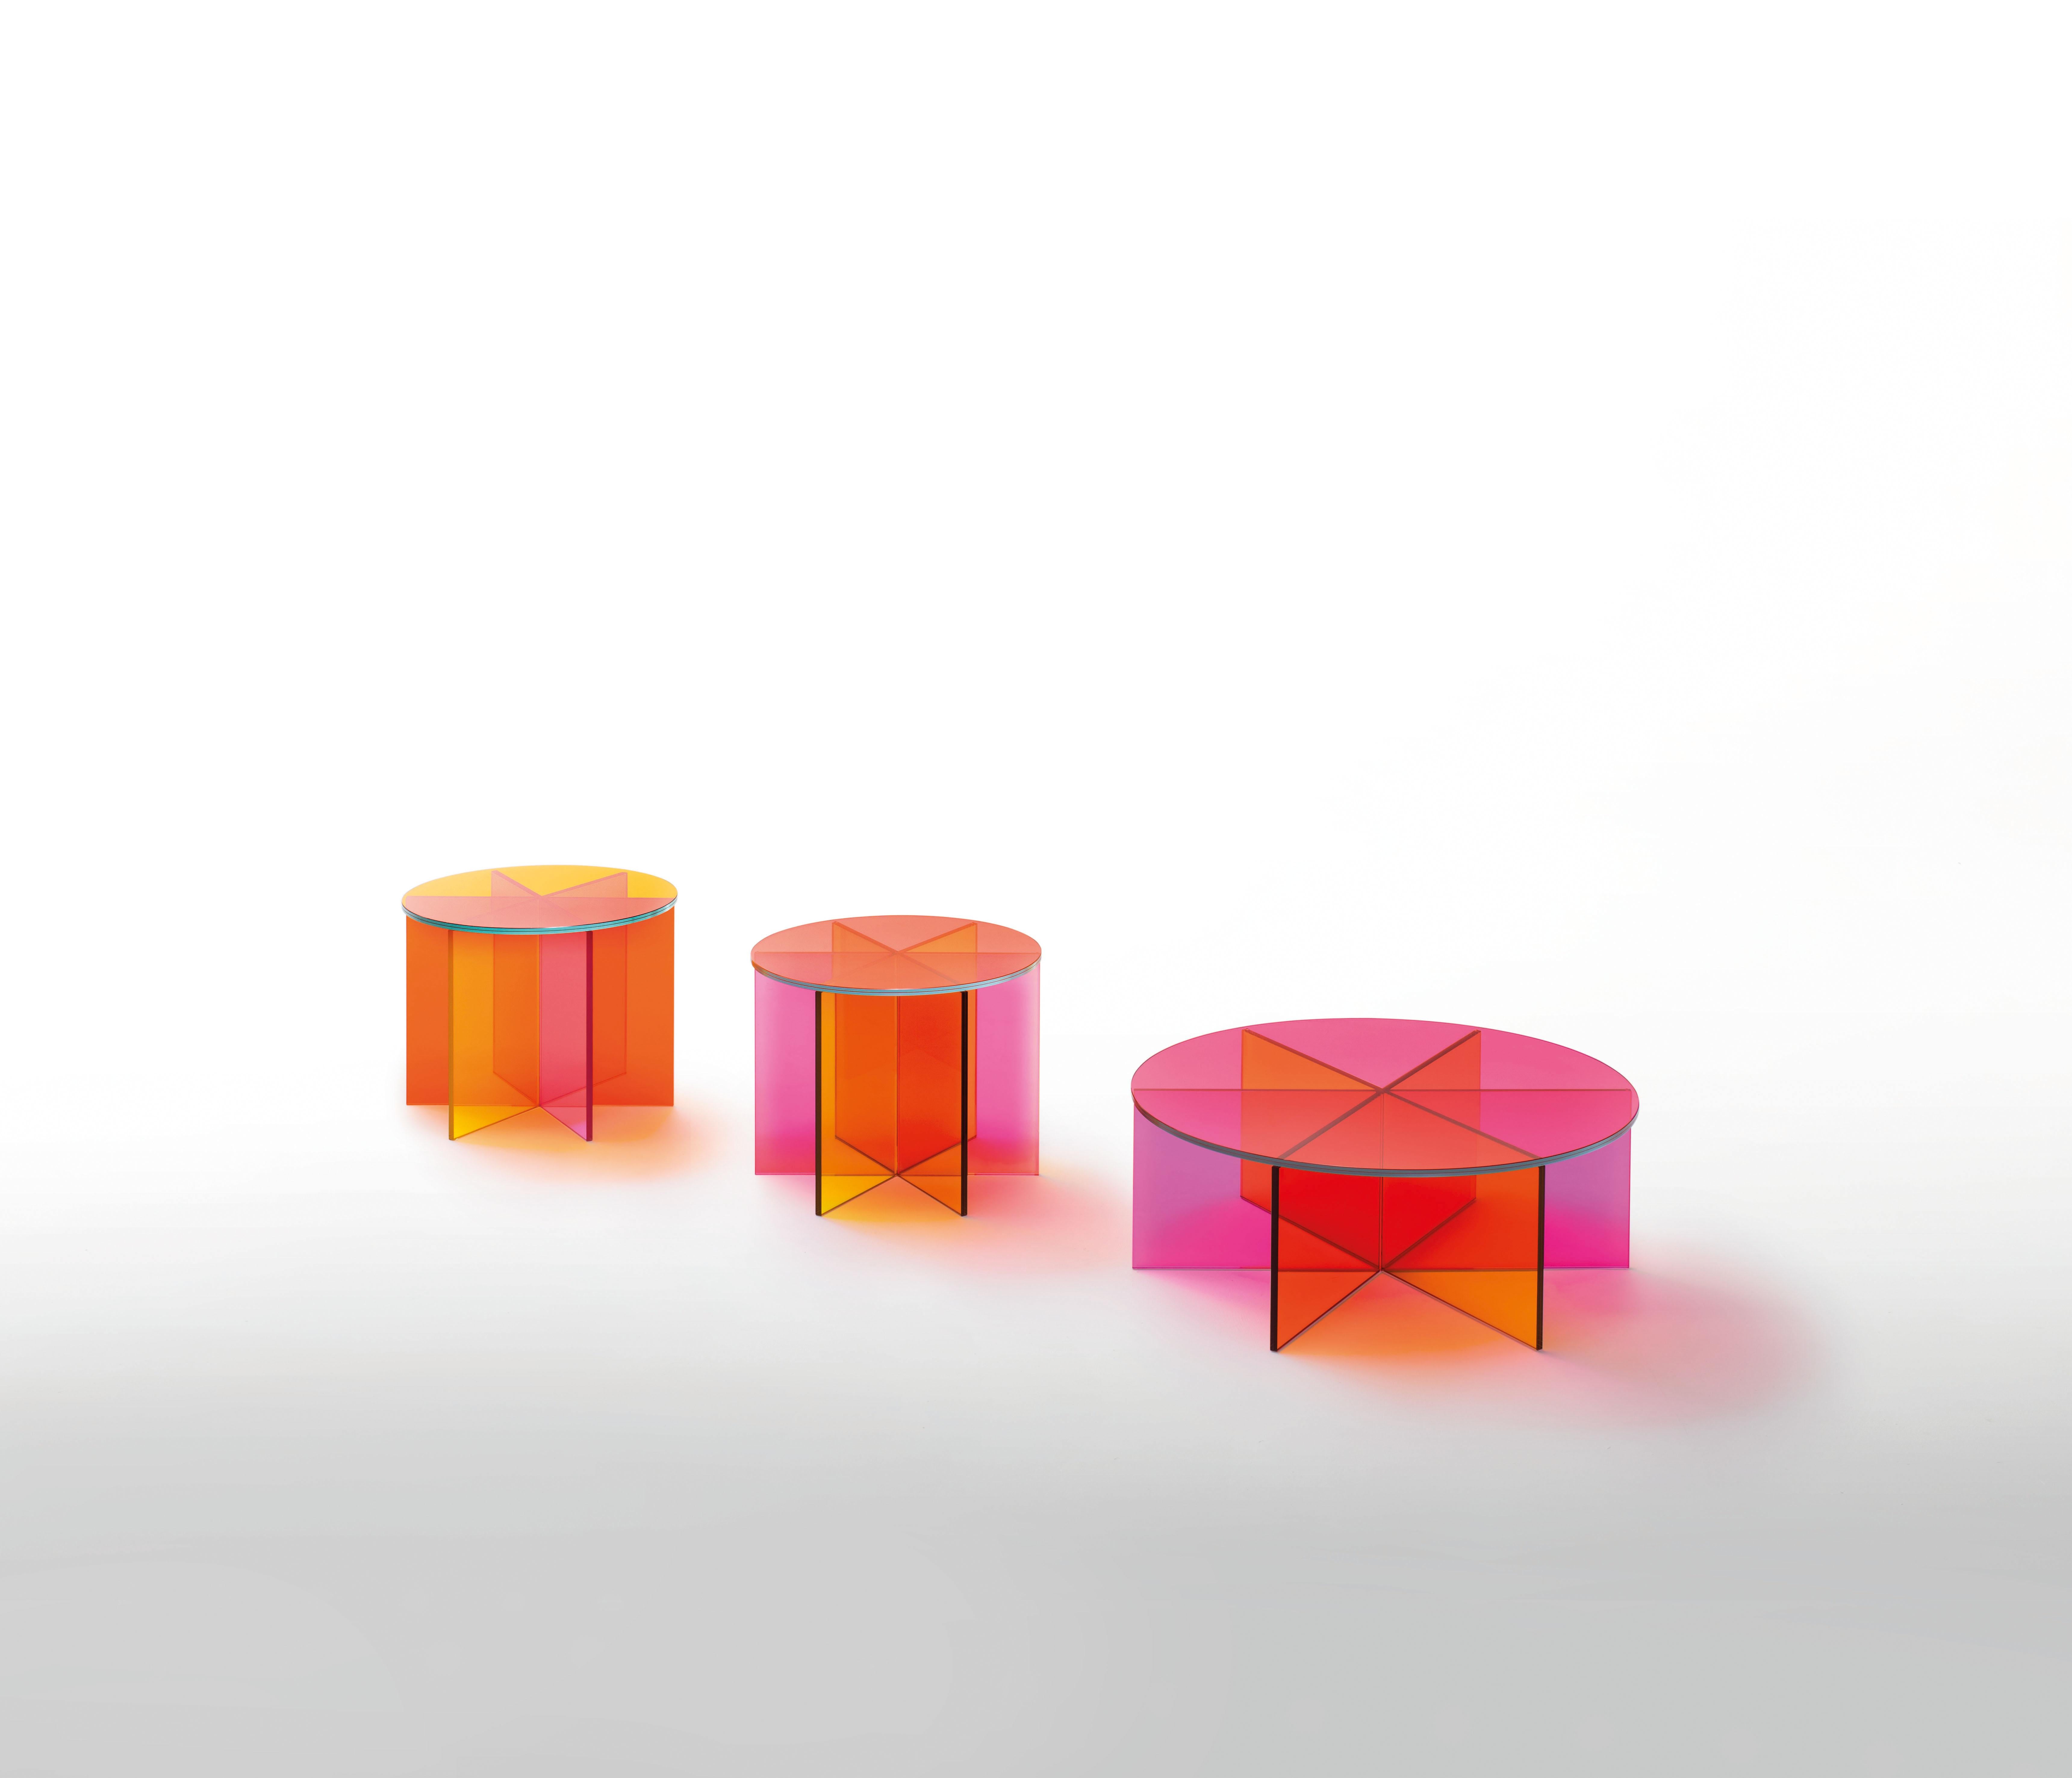 La table basse XXX est présentée ici dans le verre transparent rose, orange et jaune, et dans la grande taille des deux tables. Table basse réalisée en verre transparent de couleur rose, orange et jaune. La base est obtenue par le collage de six